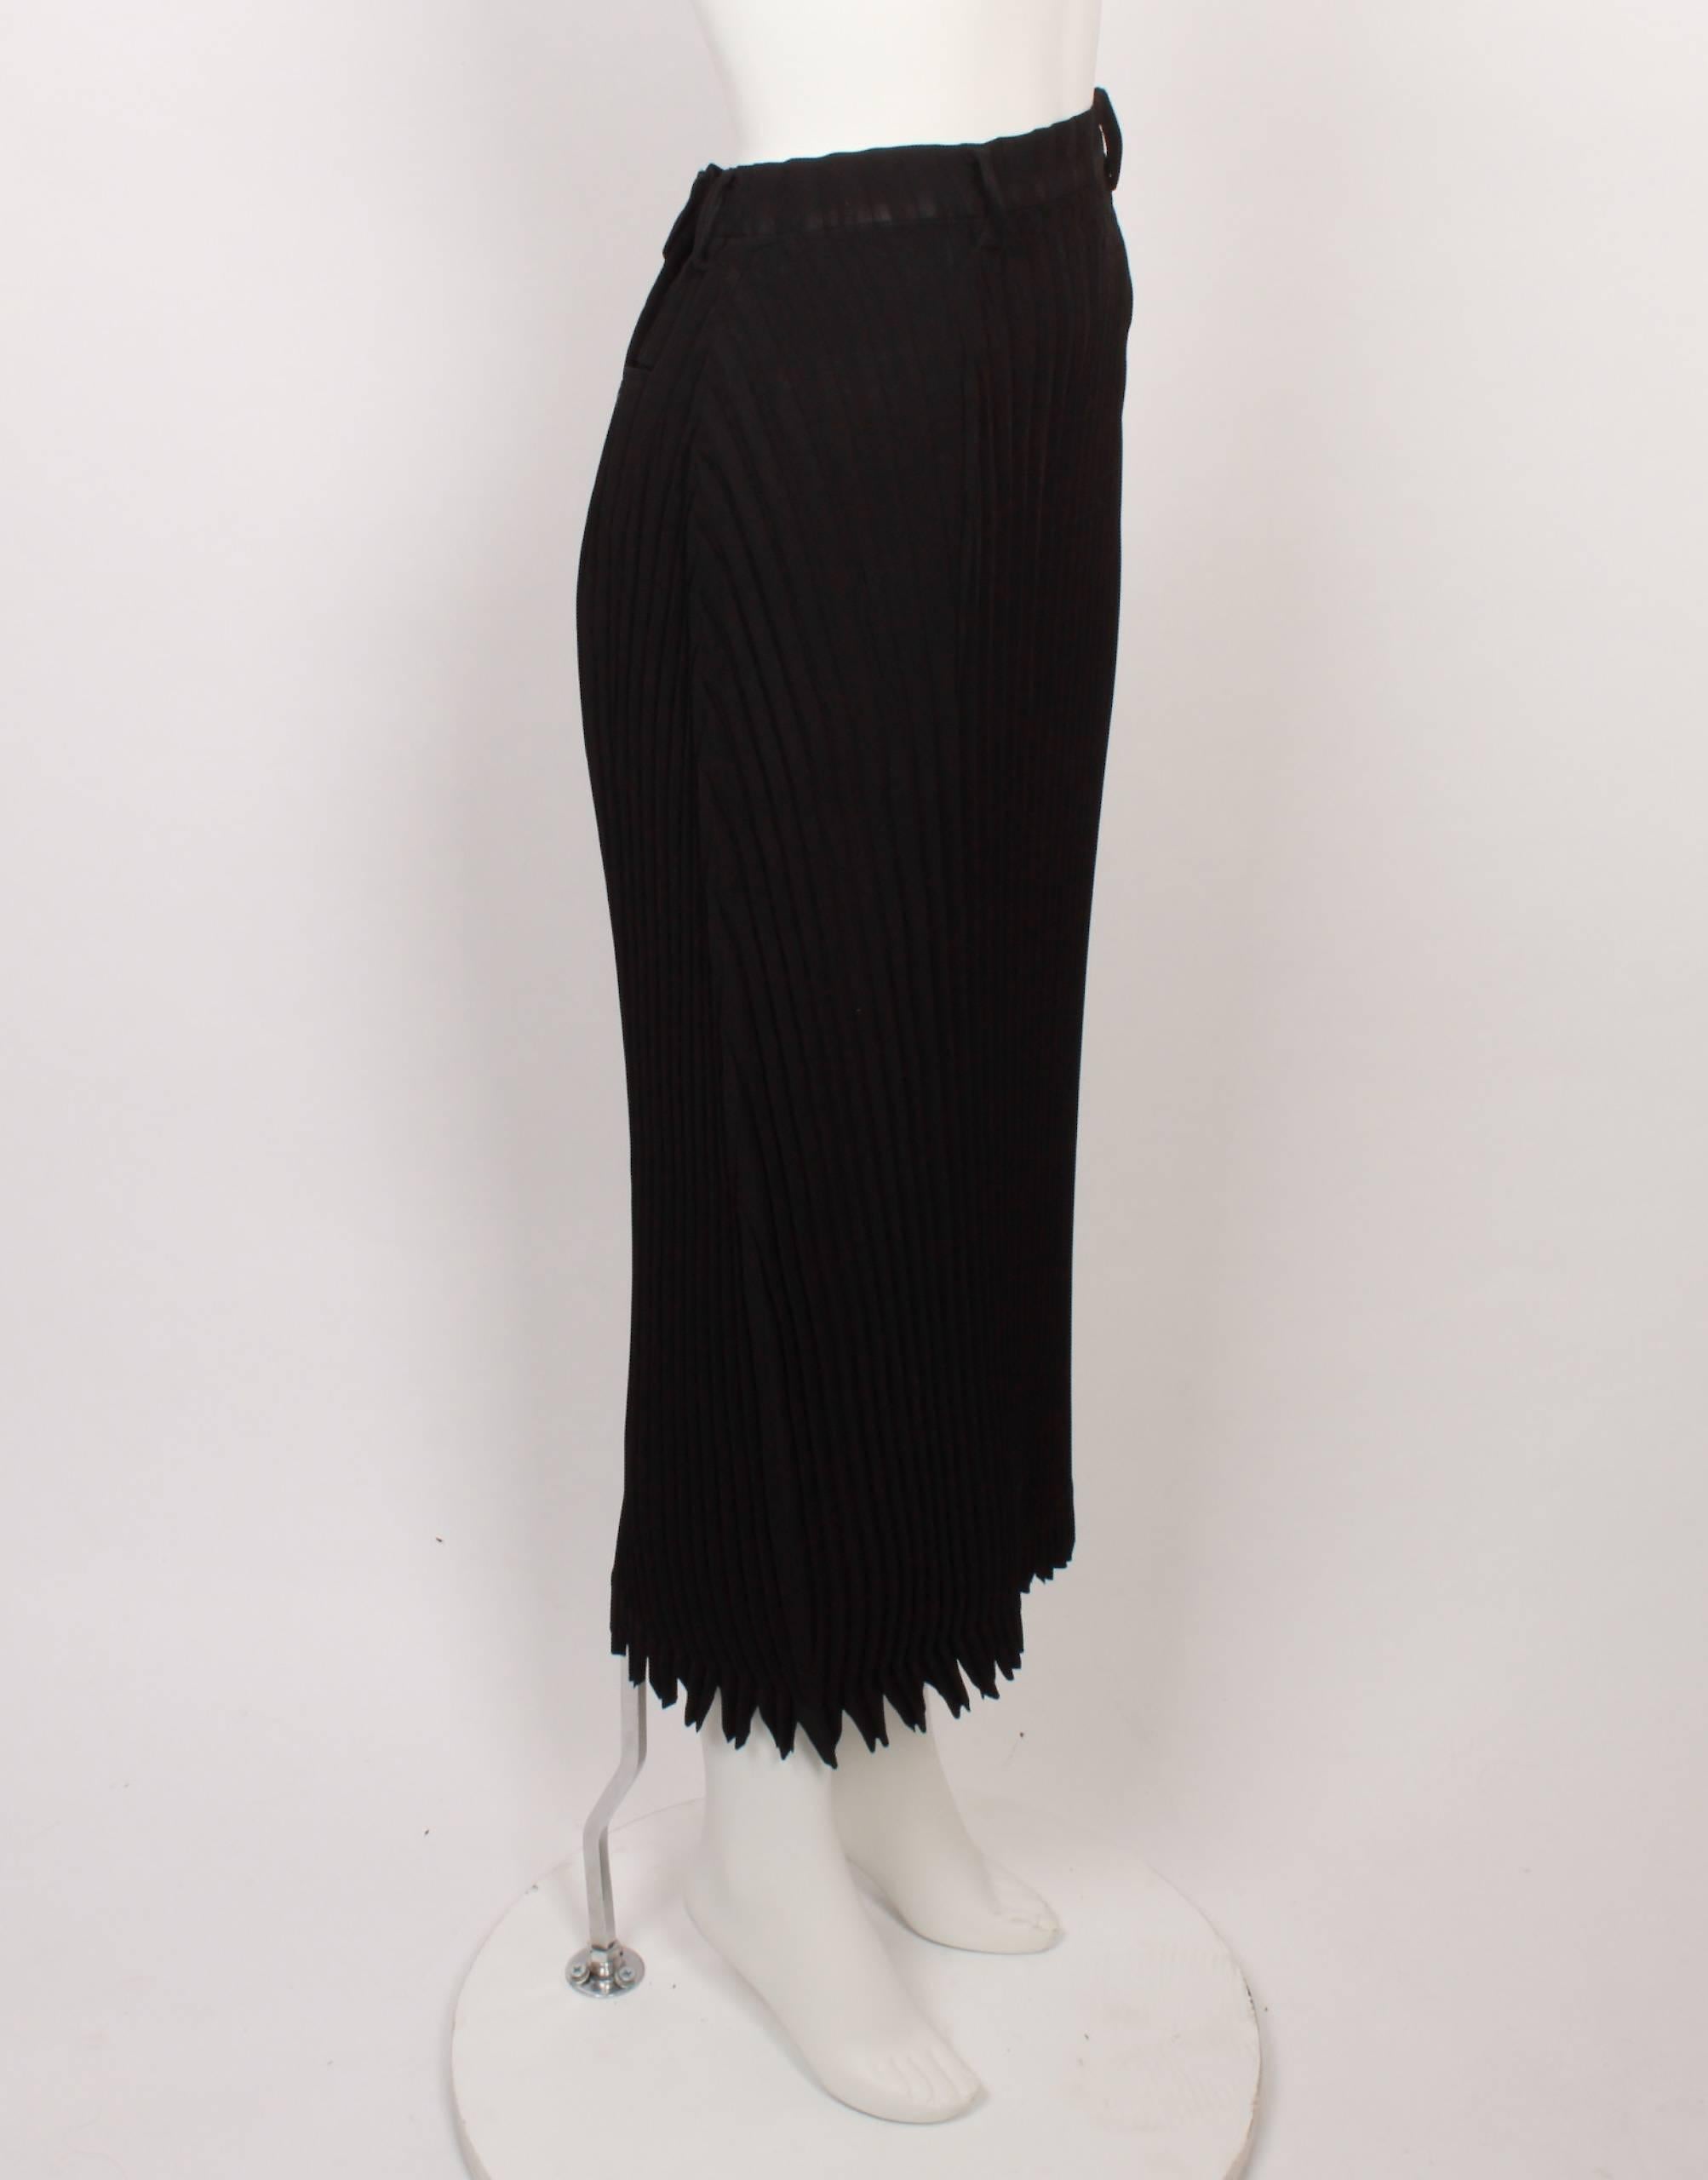 3/4 length black skirt